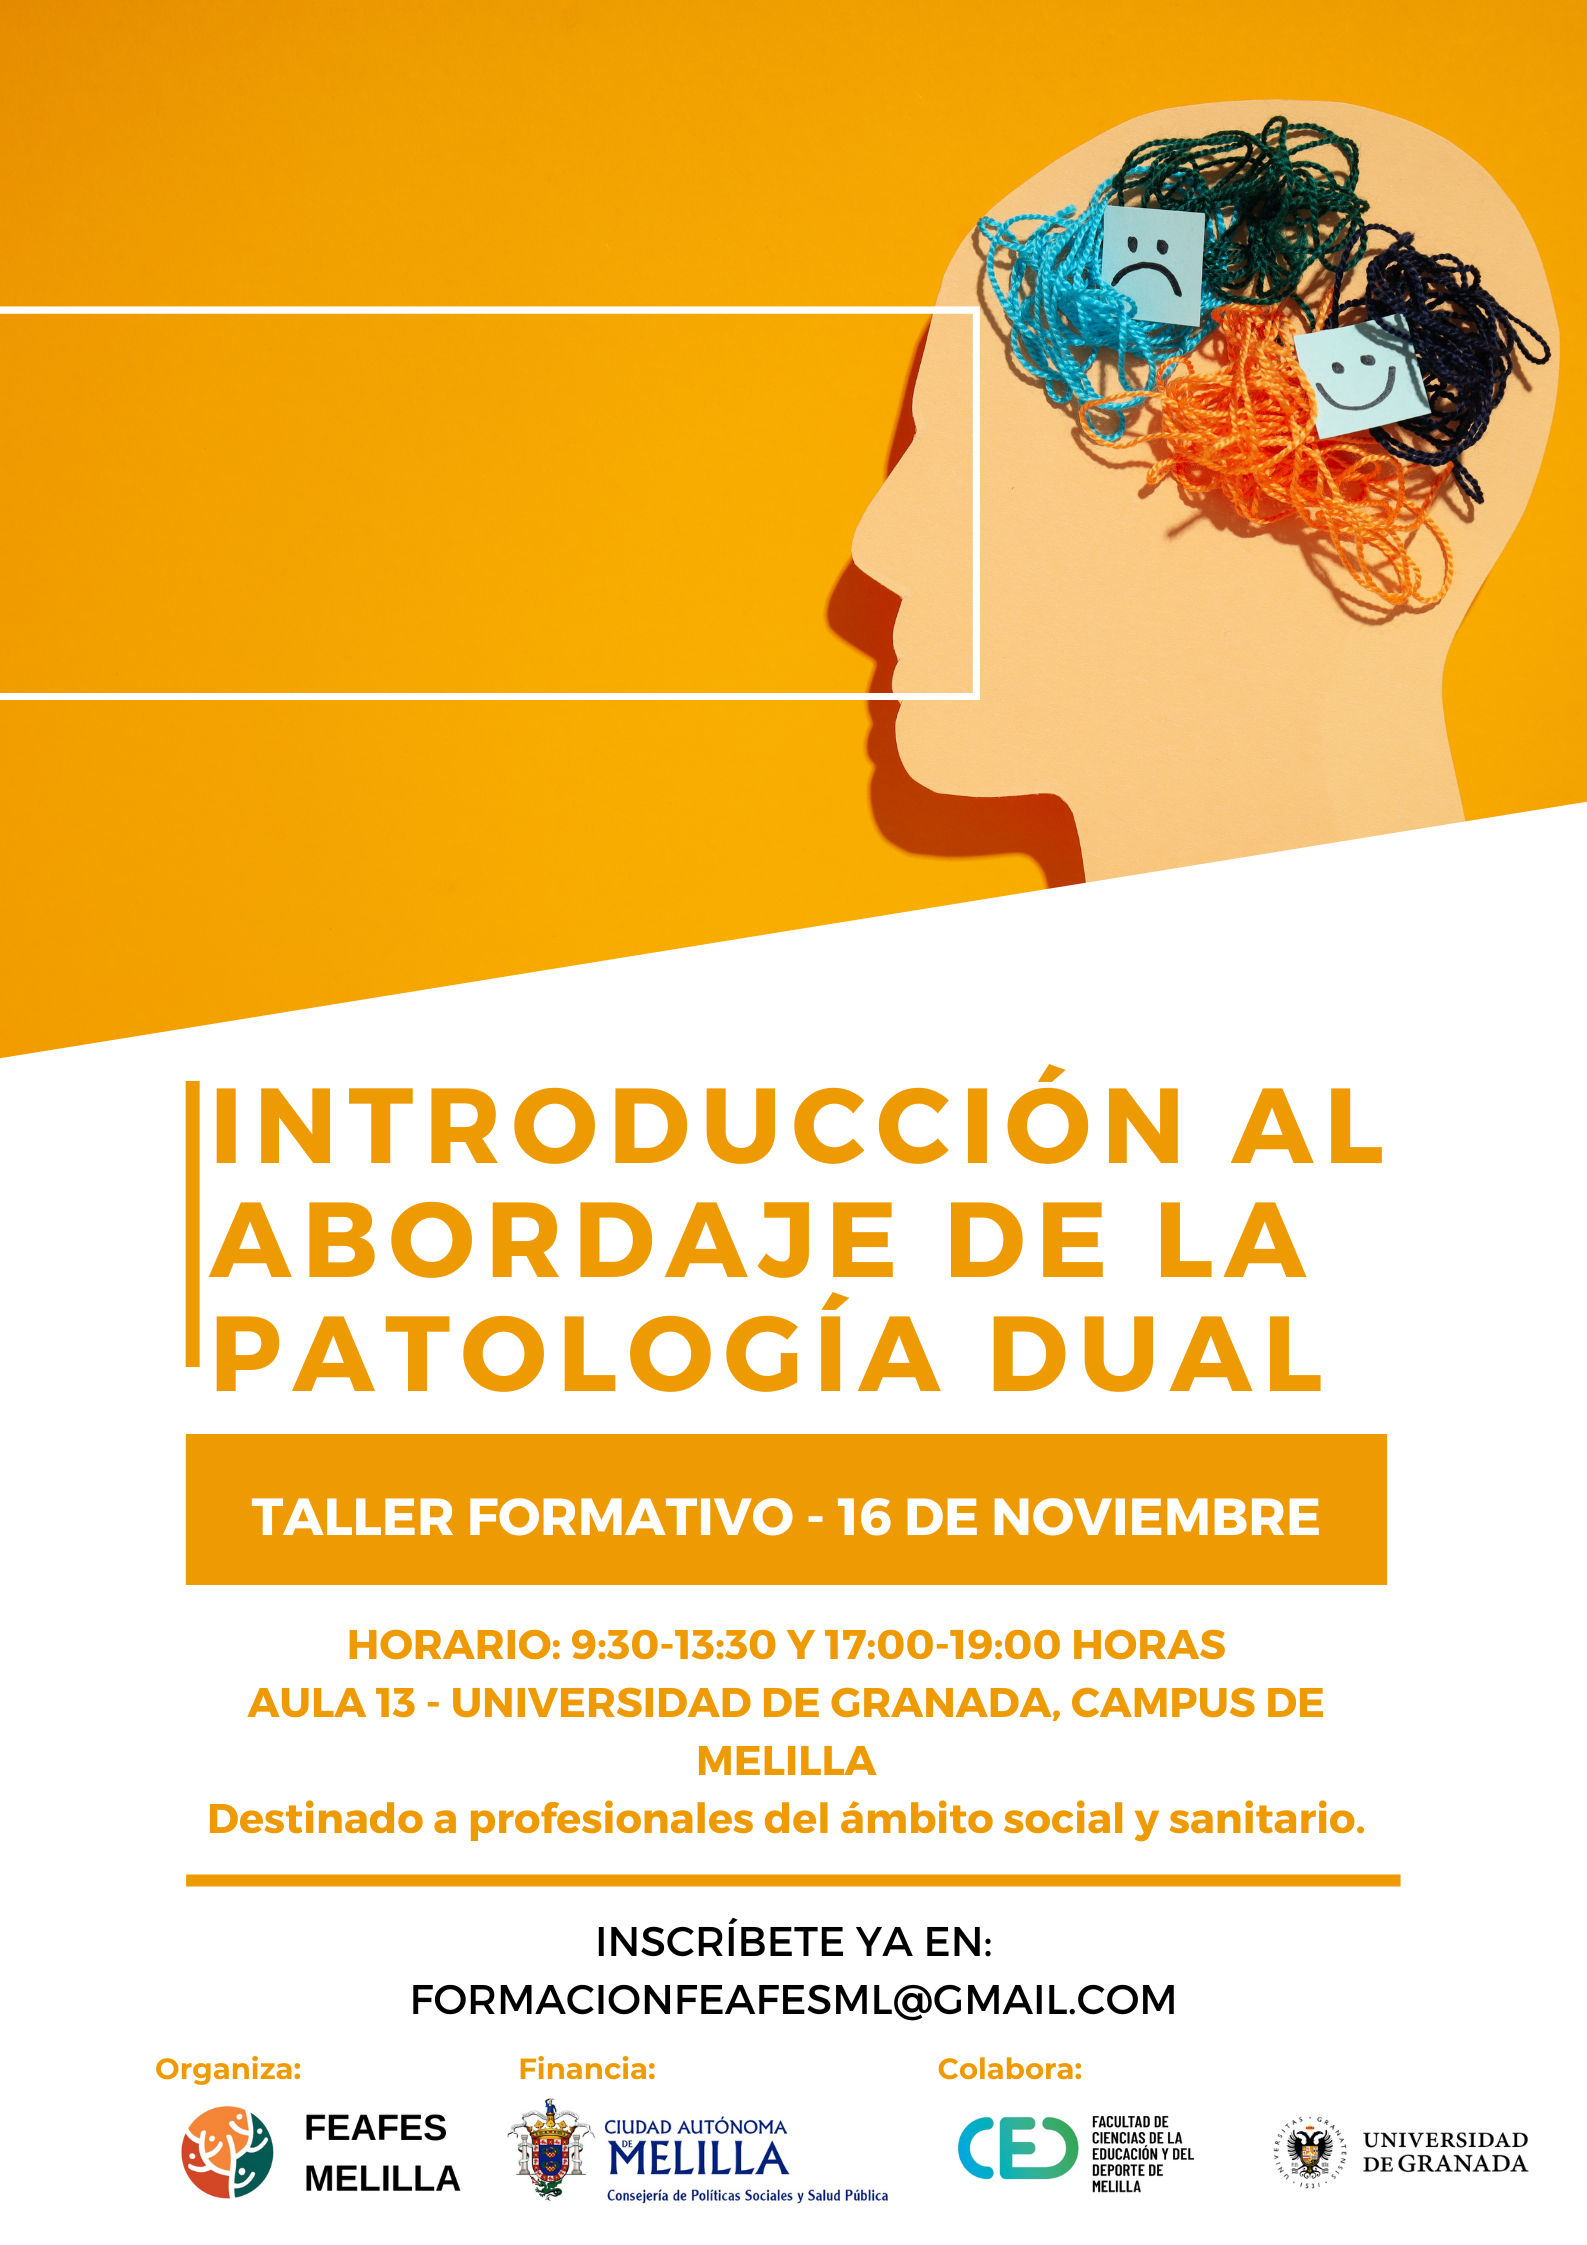 Abierta la inscripción al taller formativo de Introducción al Abordaje de la Patología Dual